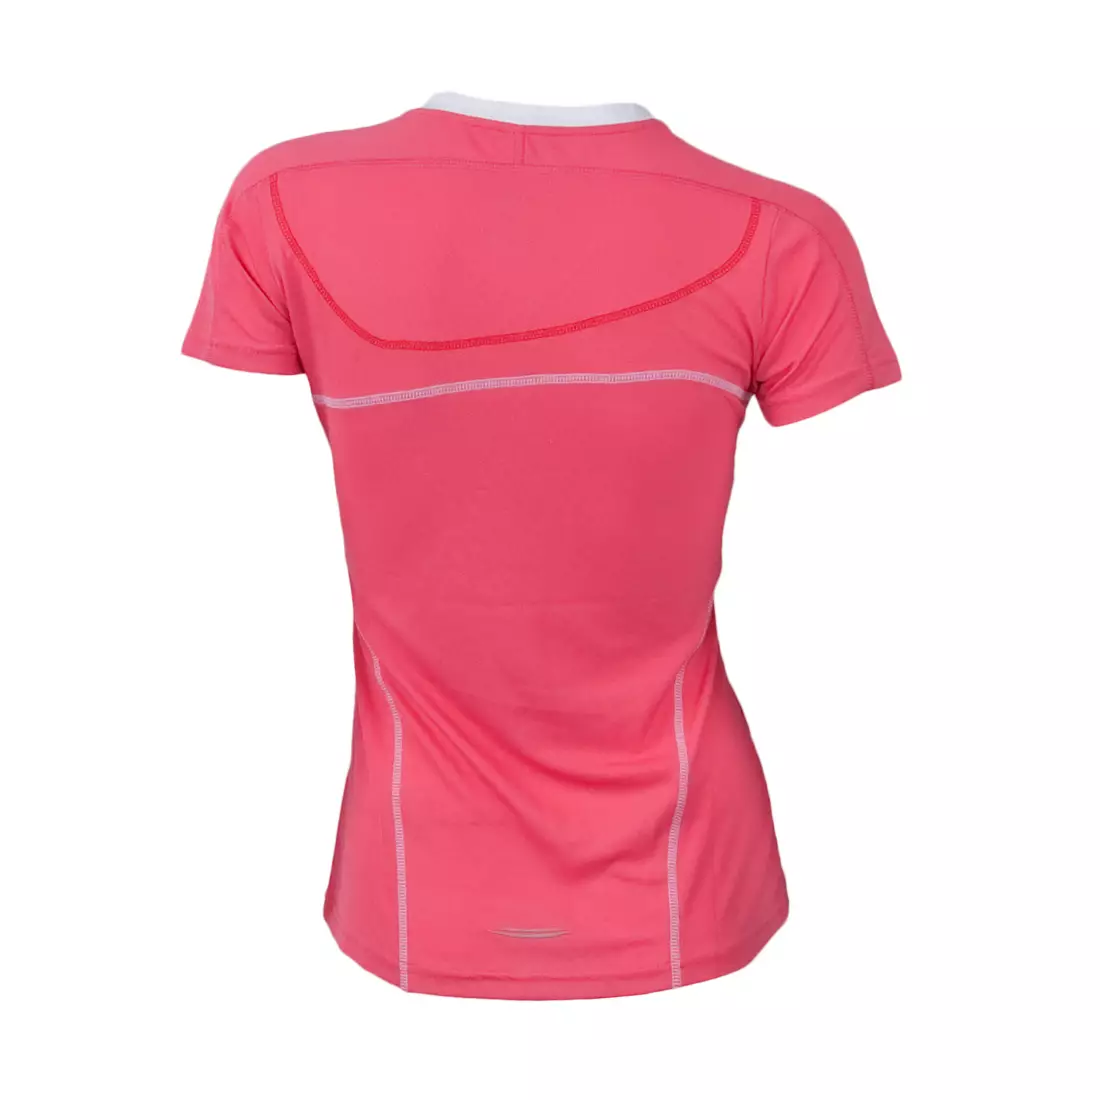 ROGELLI RUN - MIRAL - Women's running T-shirt, color: Pink